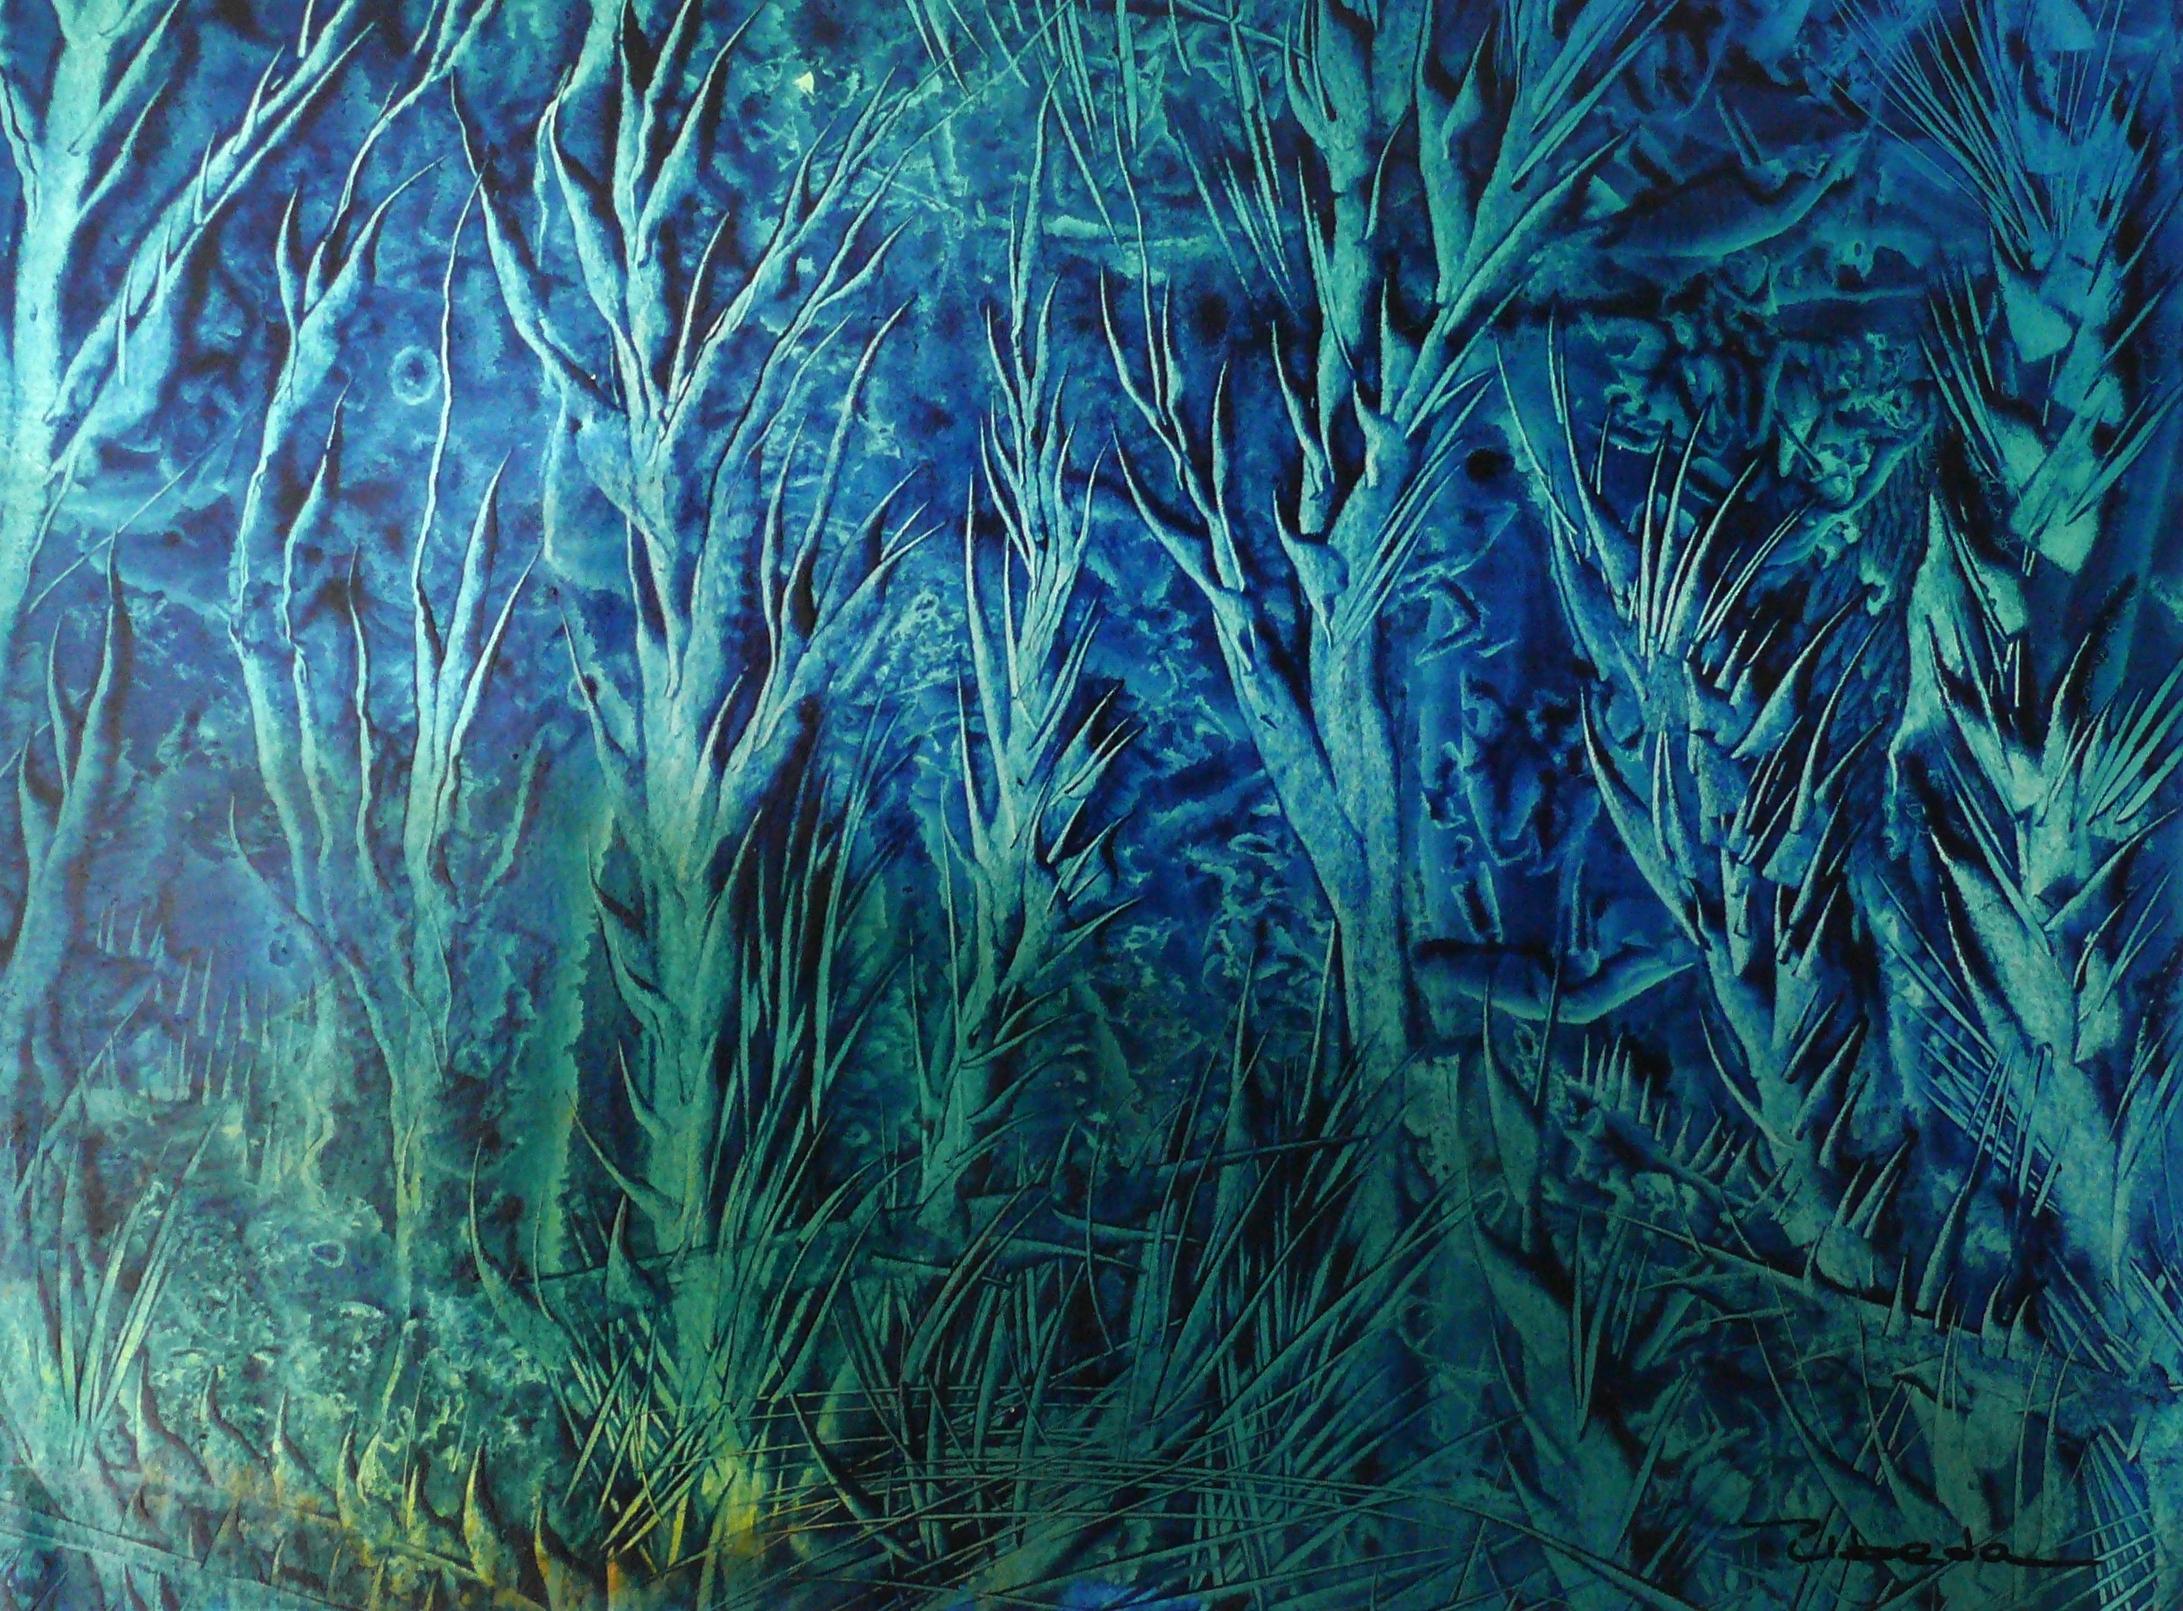 Serie Unter dem Meer, Nr. 10. Úbeda. Ölfarbe Fantasie blau grün Unterwasserlandschaft.  
Öl auf Papier, (H) 28 x (B) 39 X (T) 0,2 cm.
Autor: Úbeda.

Die Blätter, aus denen dieses Projekt besteht, erinnern an eine traumhafte Welt der Meeresböden. Der